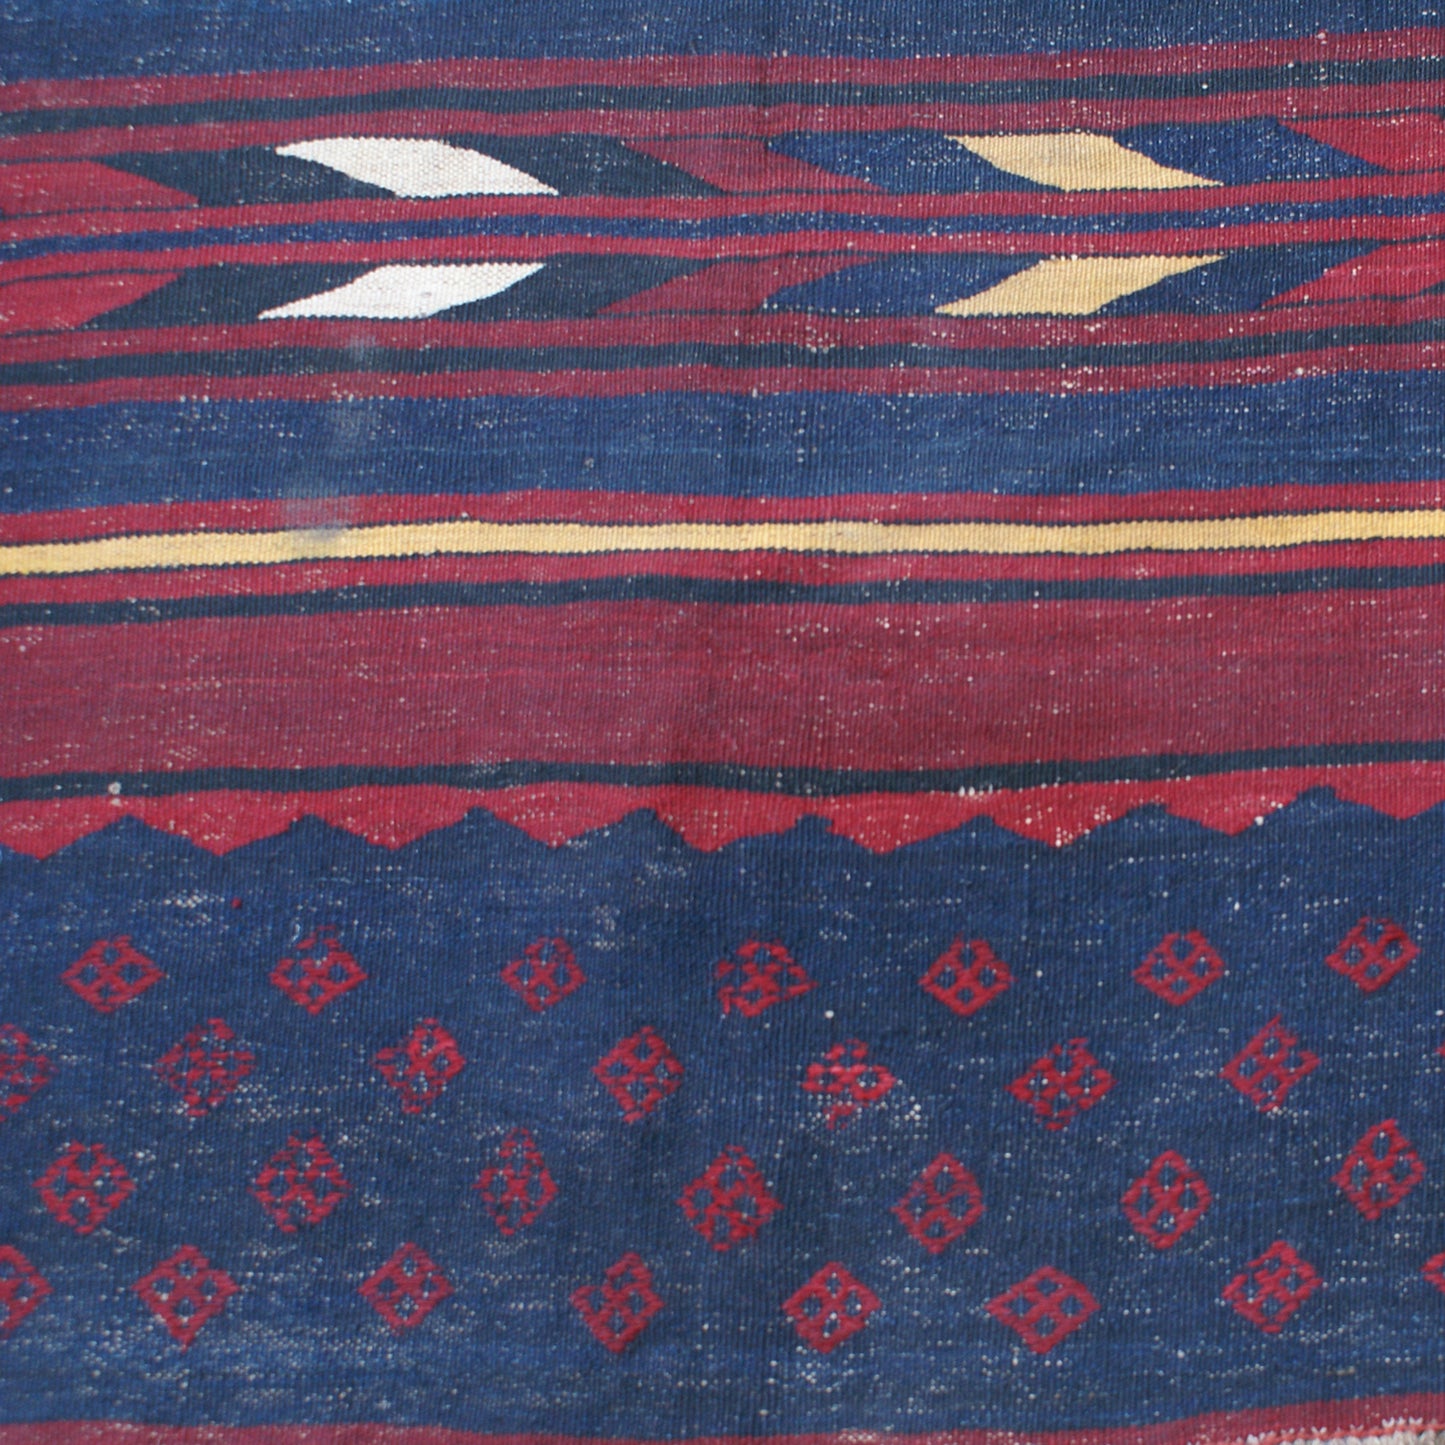 11'x15 Large Dark Rich Linear Pattern Vintage Afghan Mazar Kilim